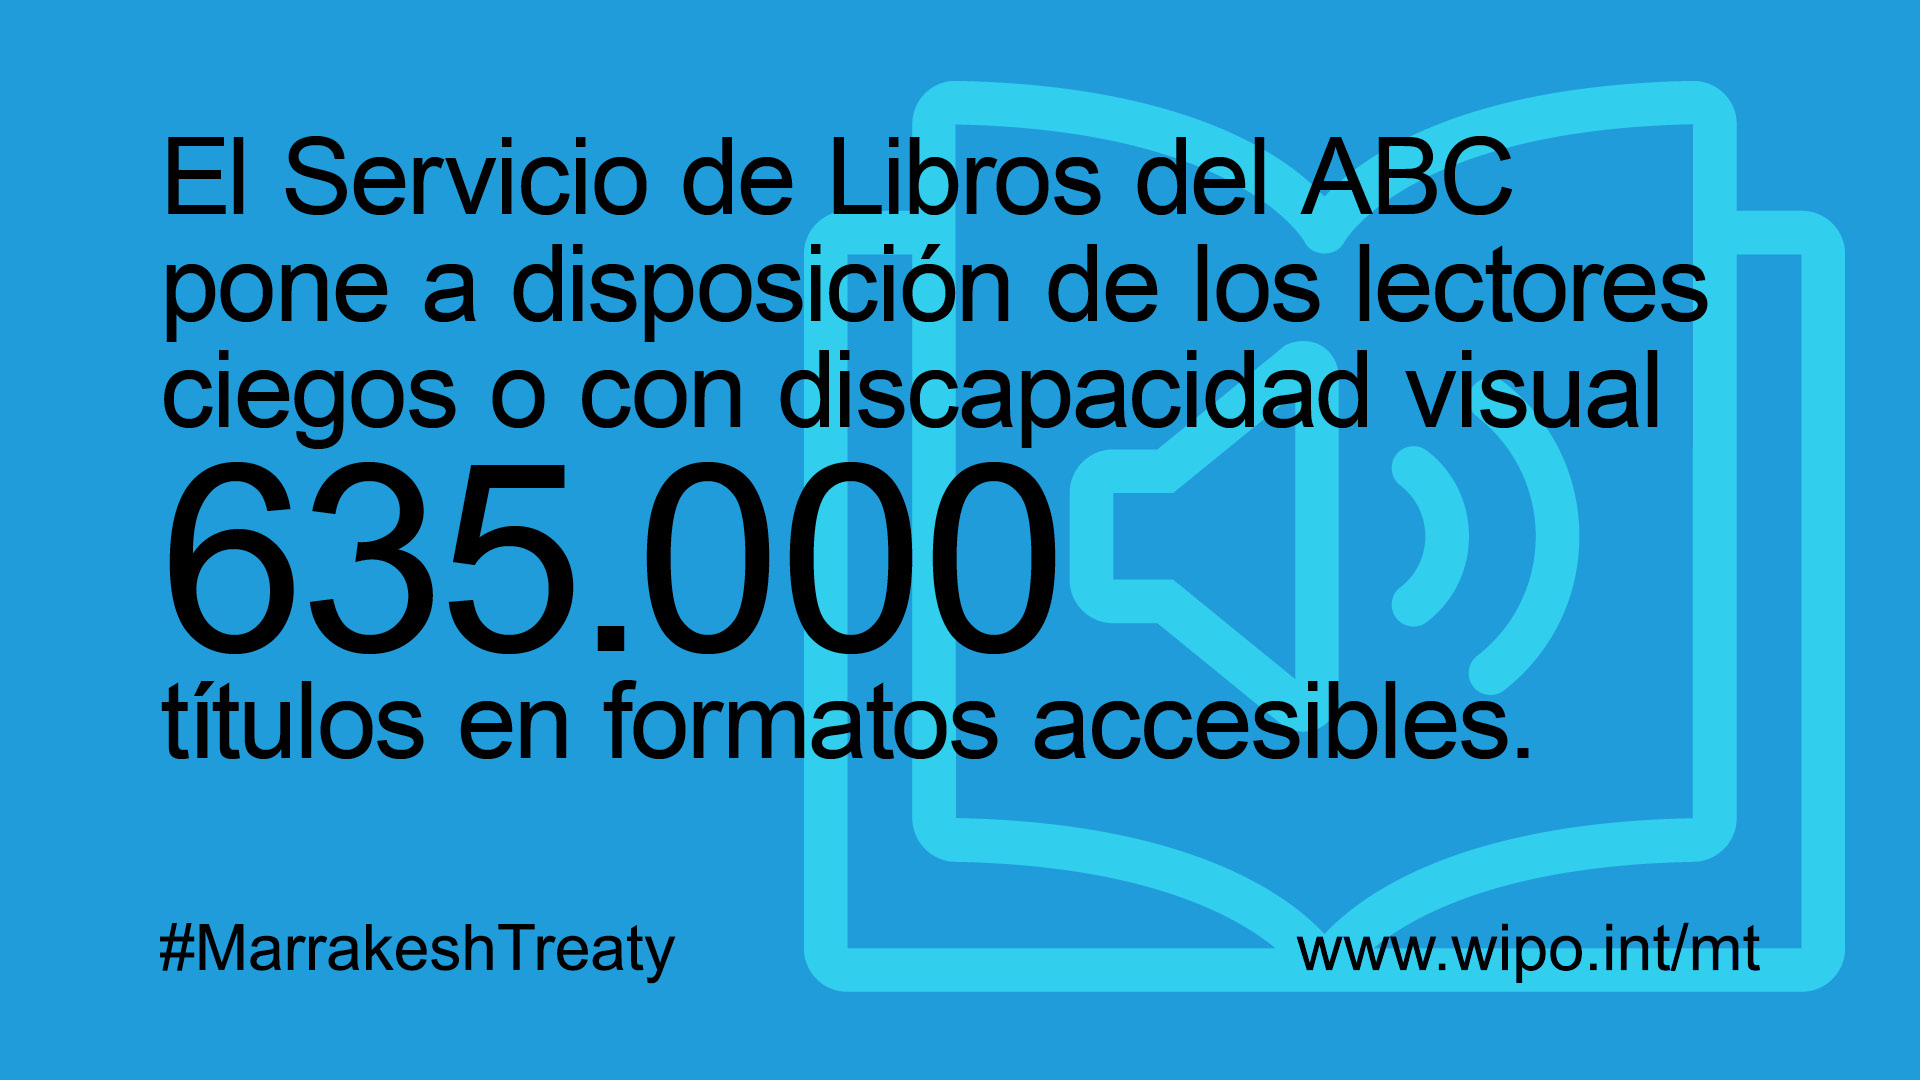 Acotación: El Servicio de Libros del ABC pone a disposición de los lectores ciegos o con discapacidad visual 635.000 títulos en formatos accesibles